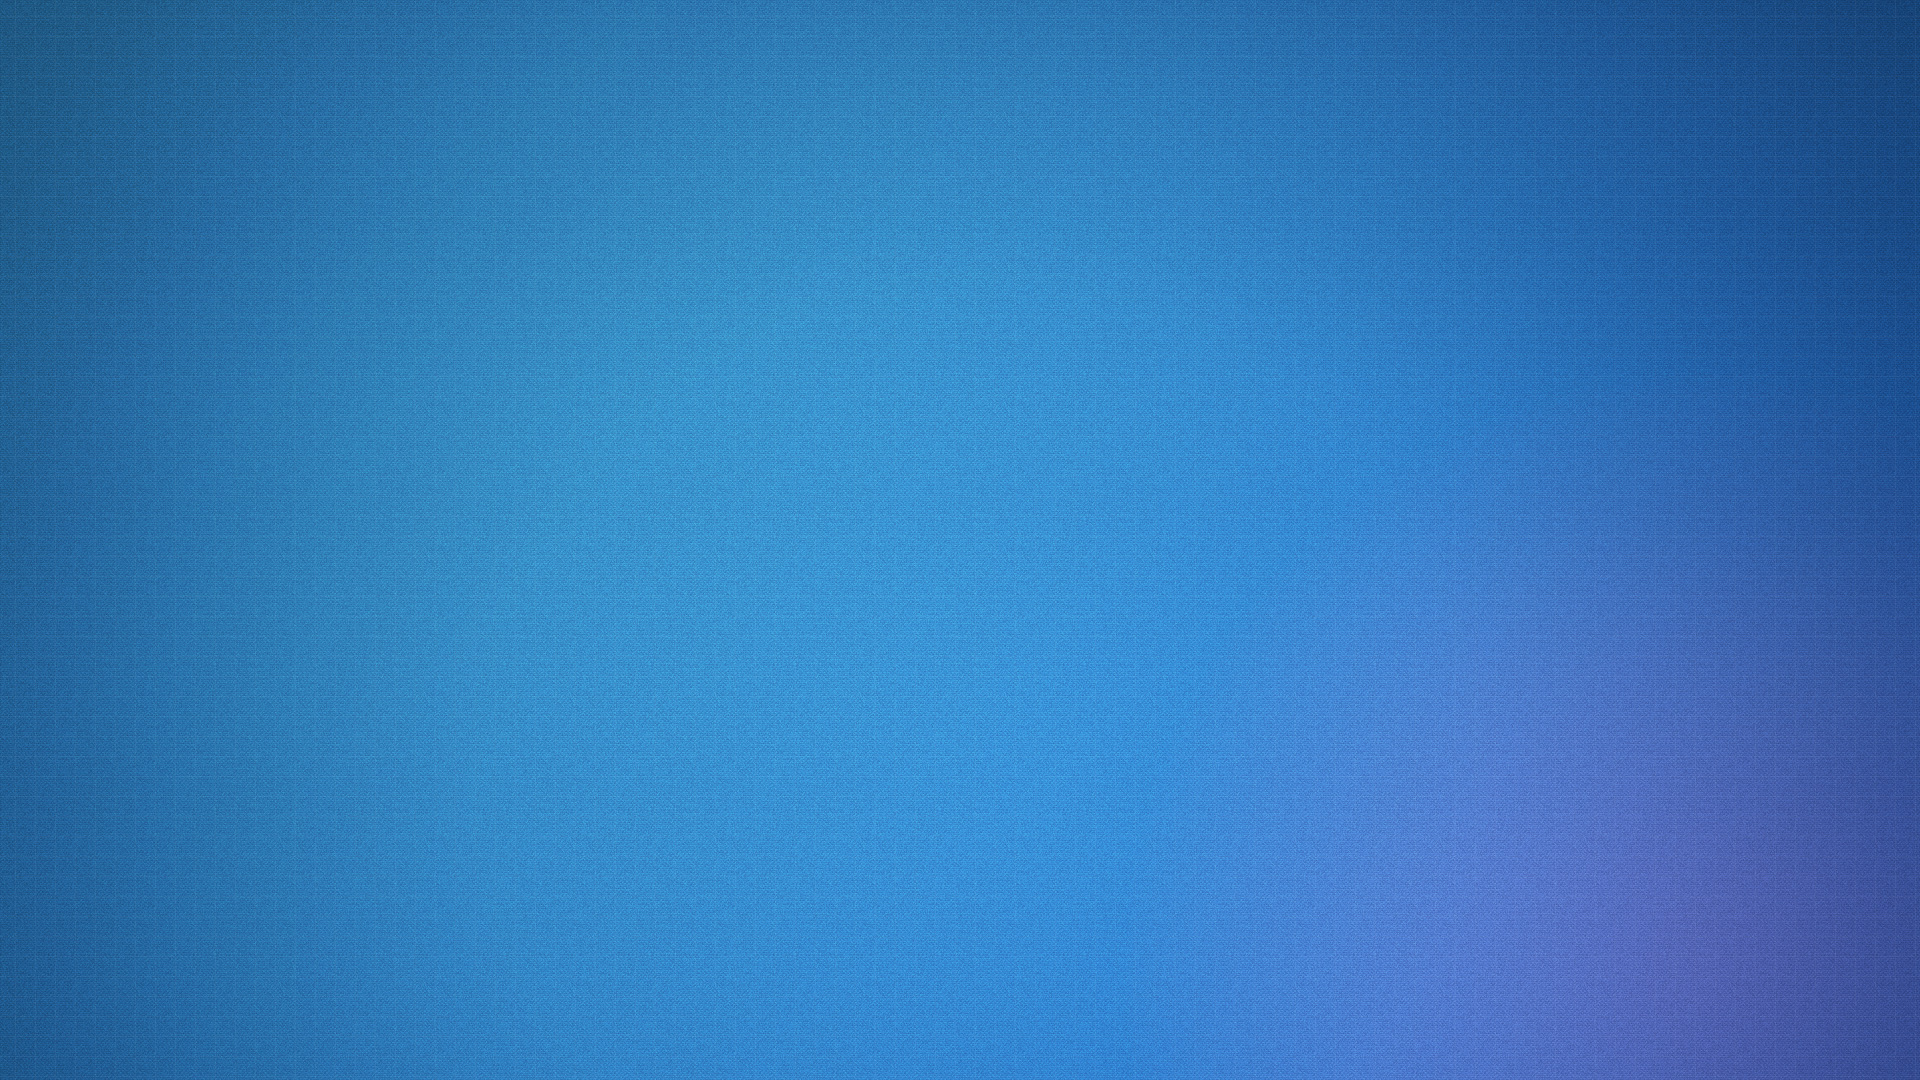 Free HD Light Blue Wallpaper | PixelsTalk.Net